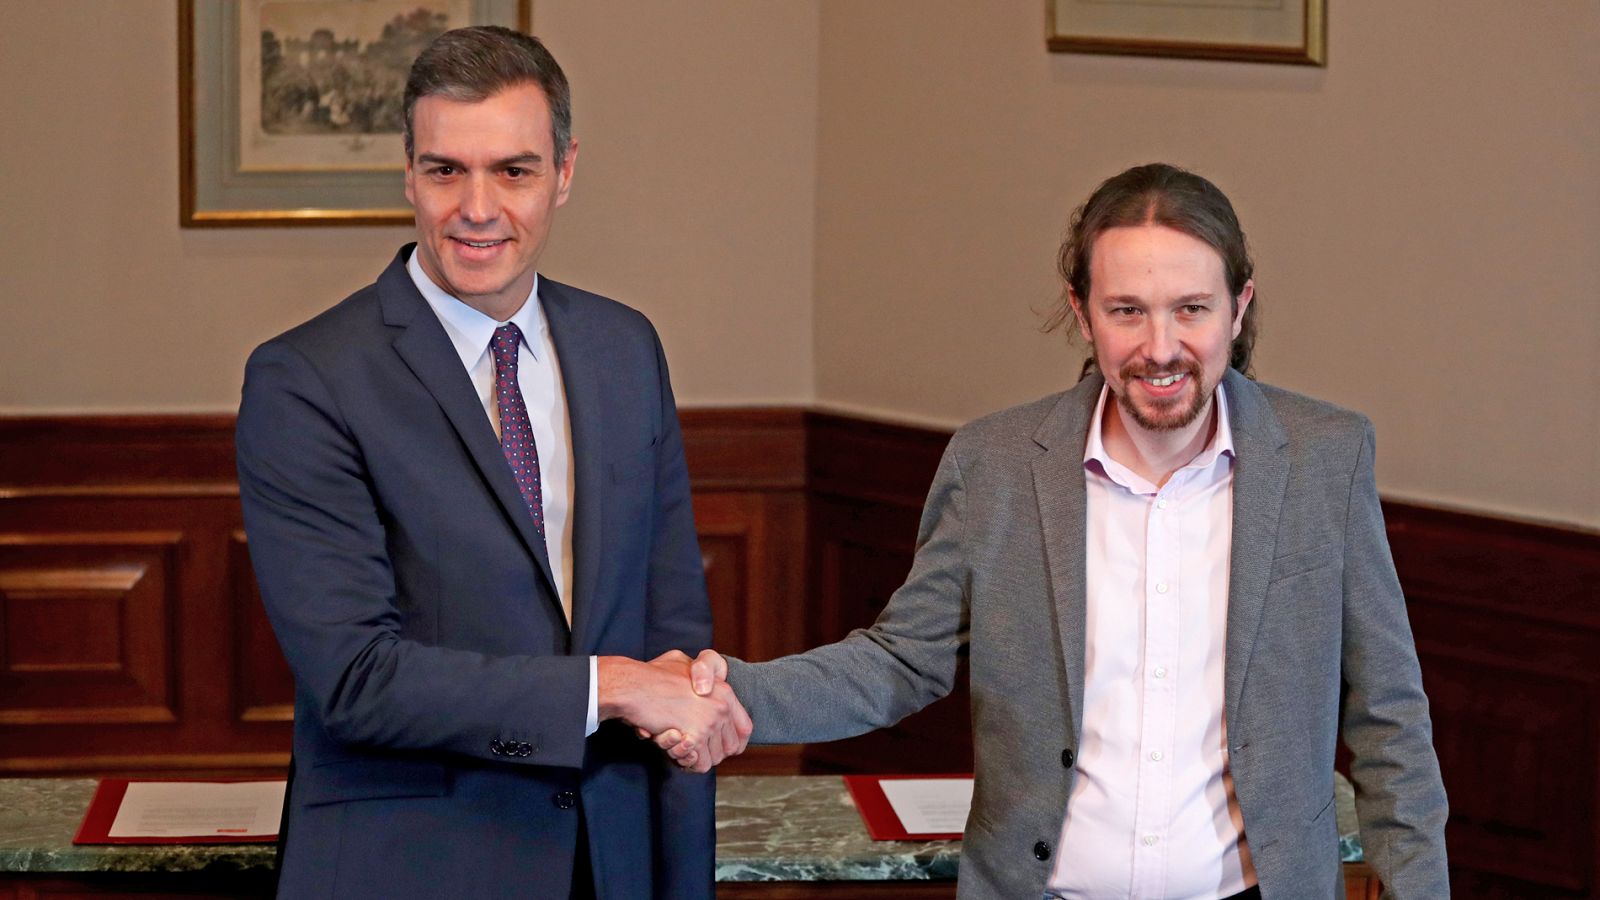 Elecciones generales: Sánchez e Iglesias cierran un preacuerdo para un "Gobierno progresista de coalición" - RTVE.es